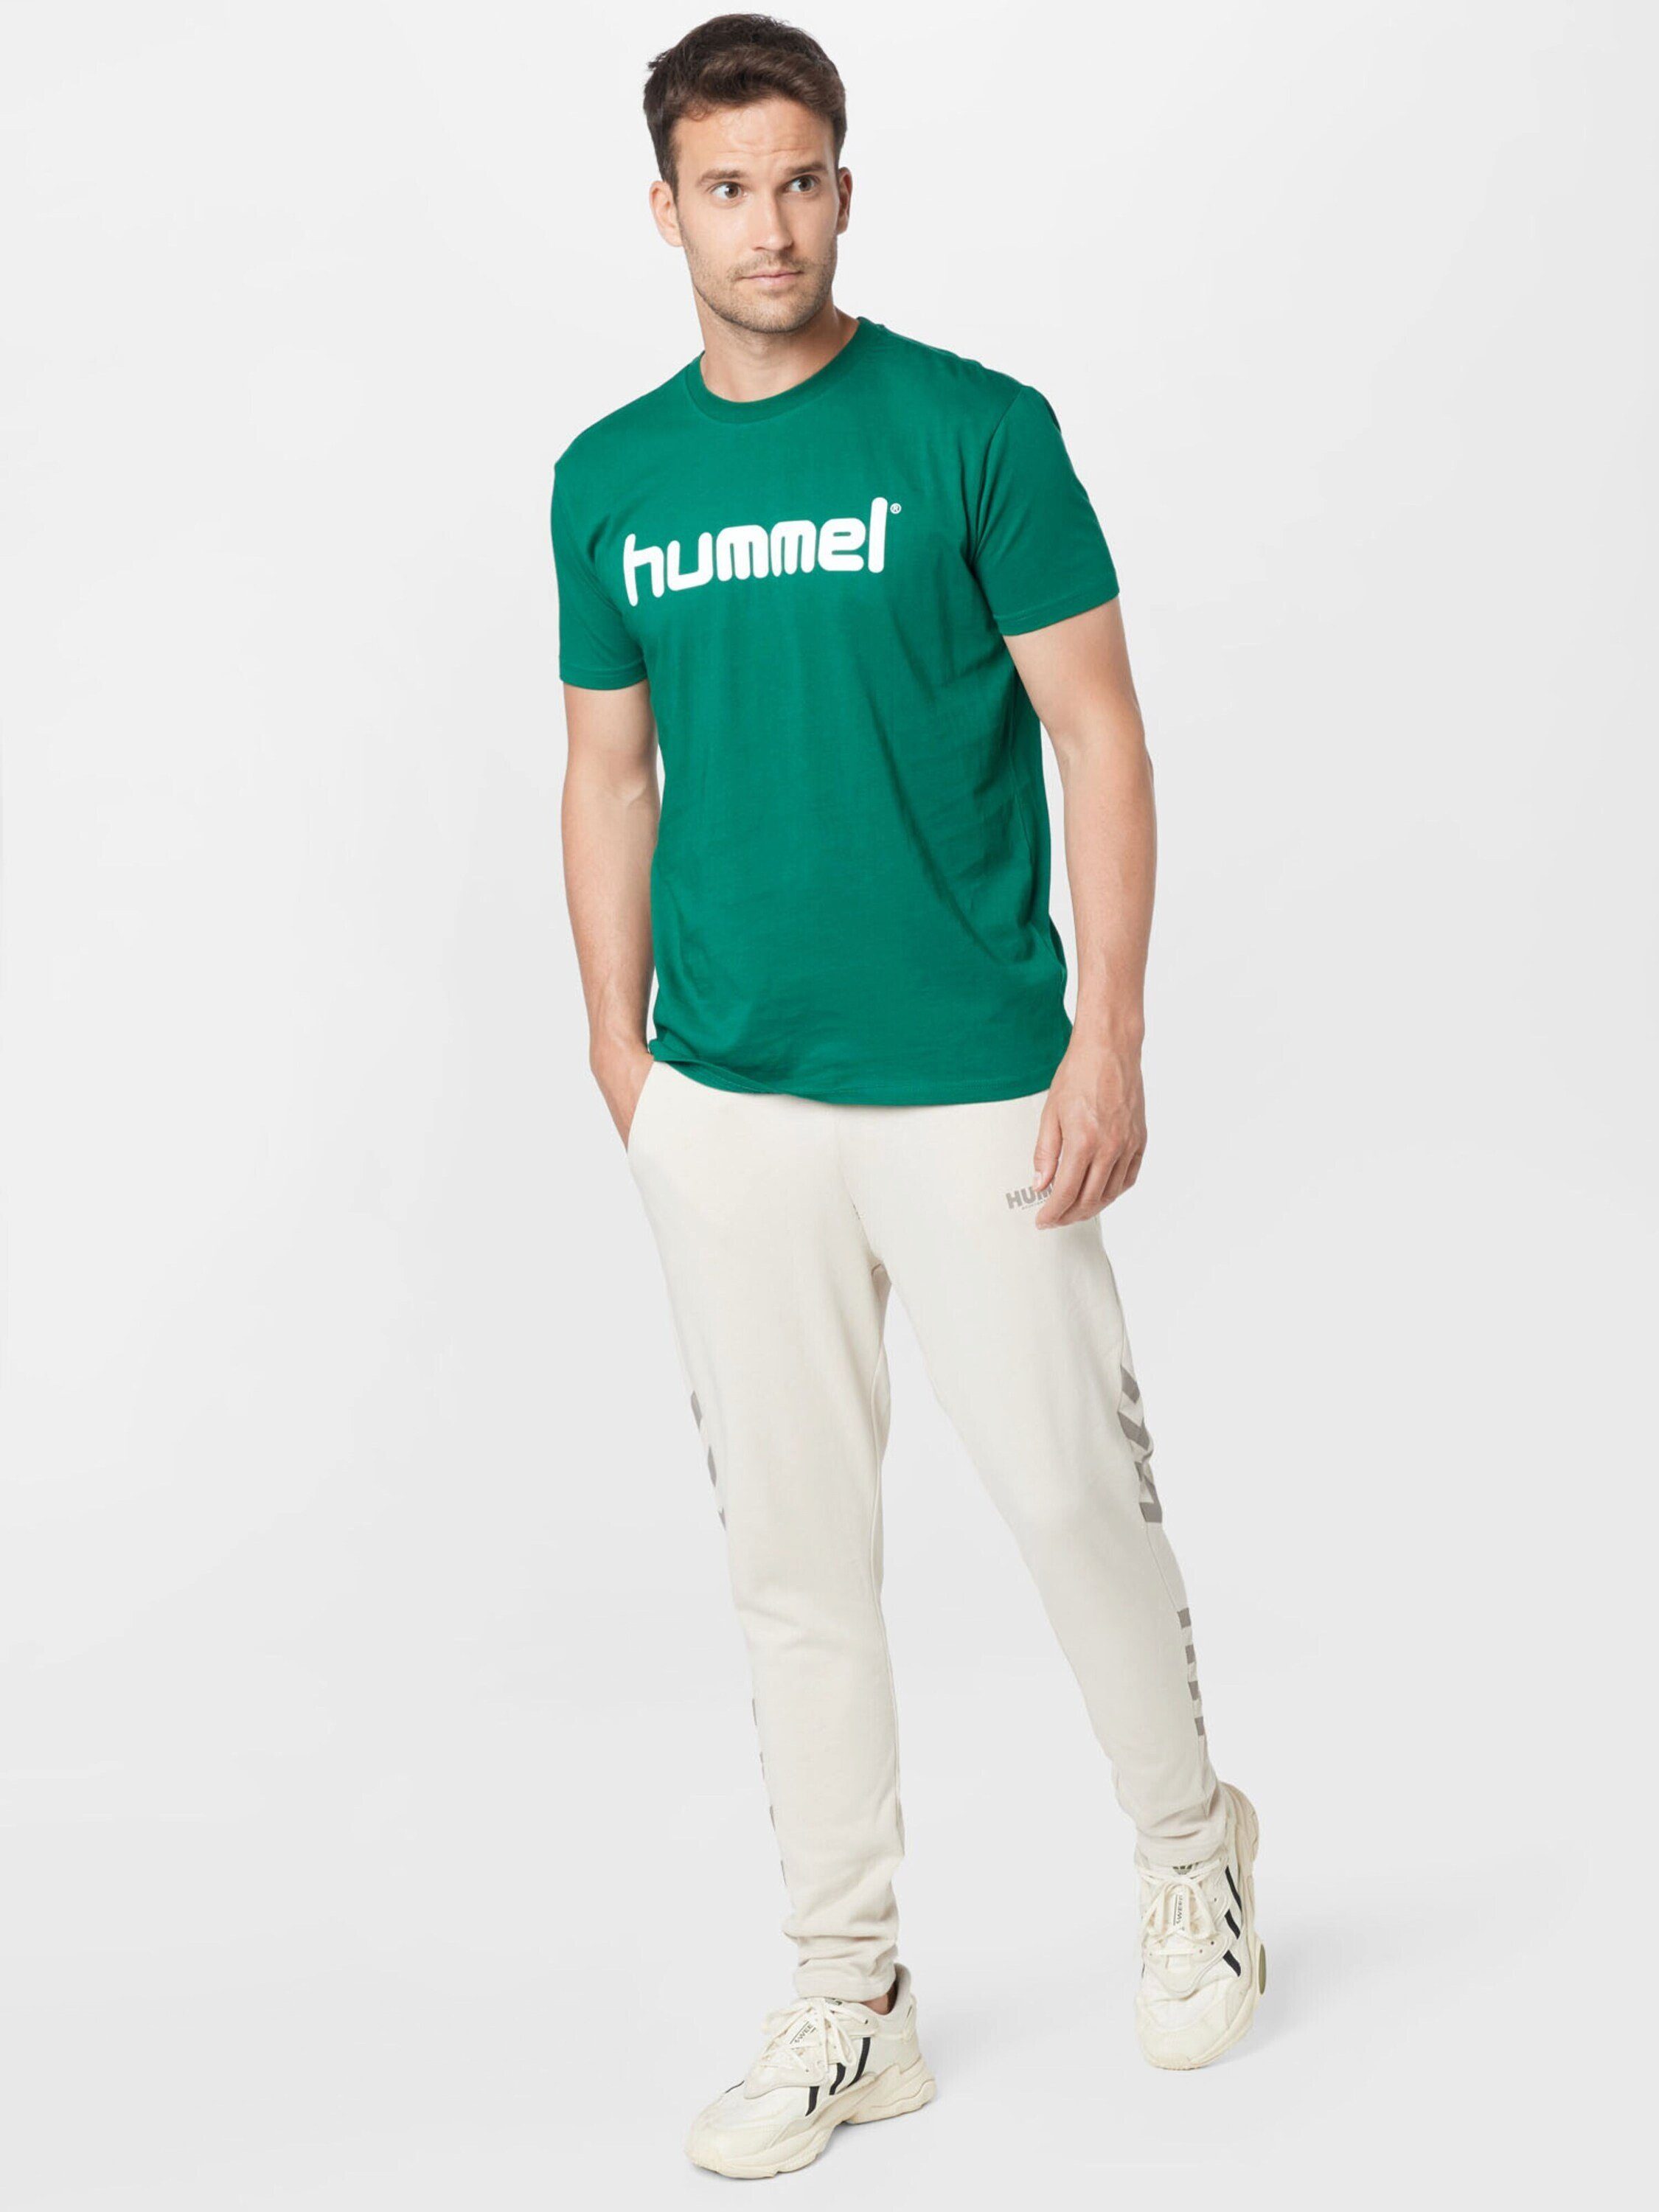 Gruenweiss (1-tlg) T-Shirt hummel